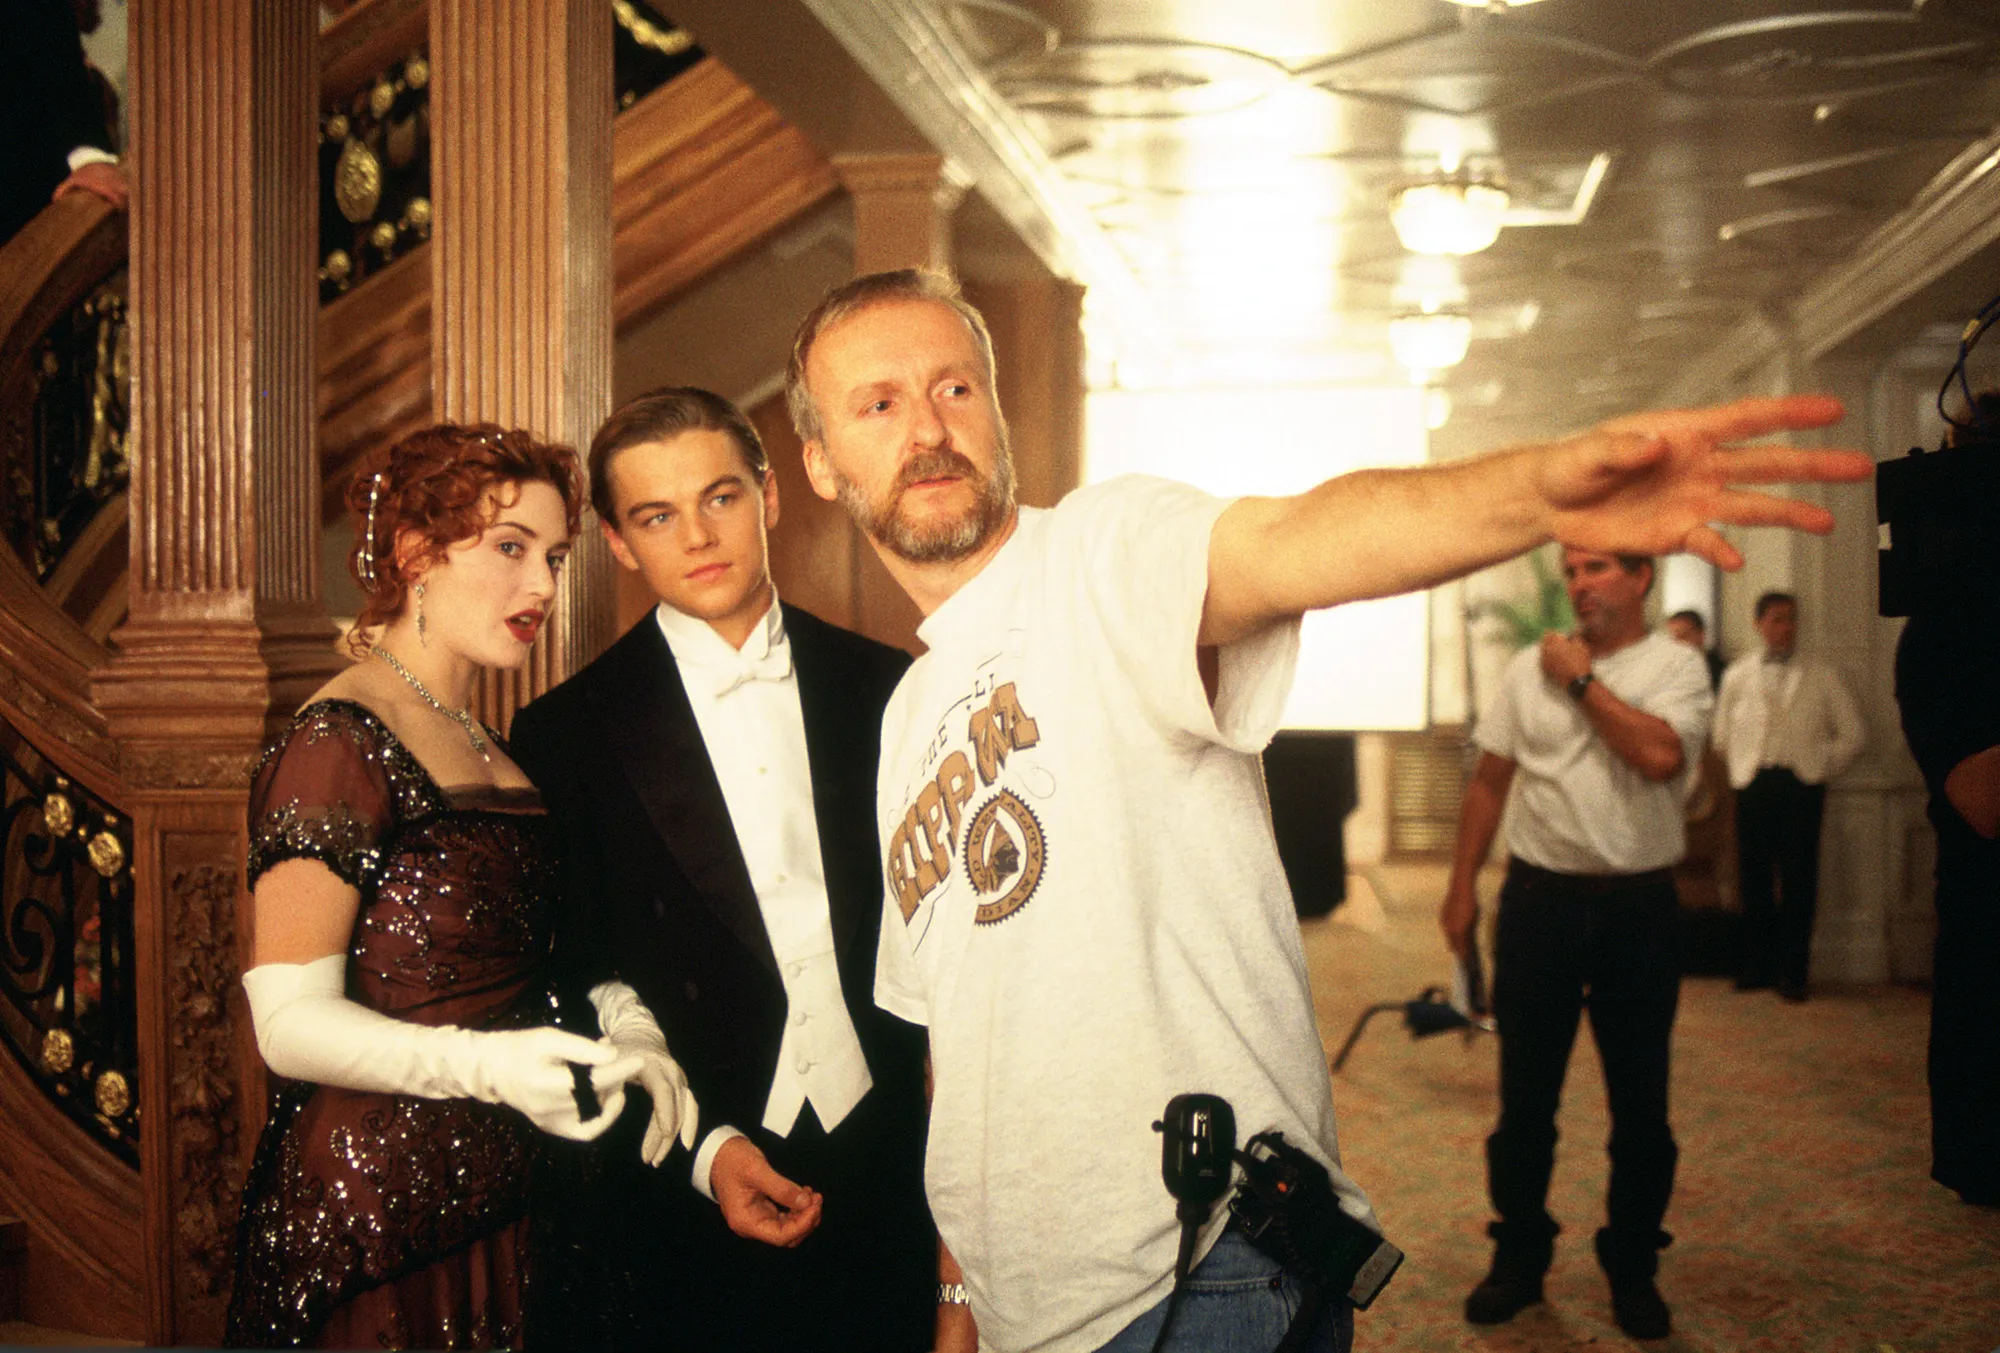 Џемјс Камерон сакал да го исфрли Леонардо ди Каприо од „Титаник“ зашто бил арогантен